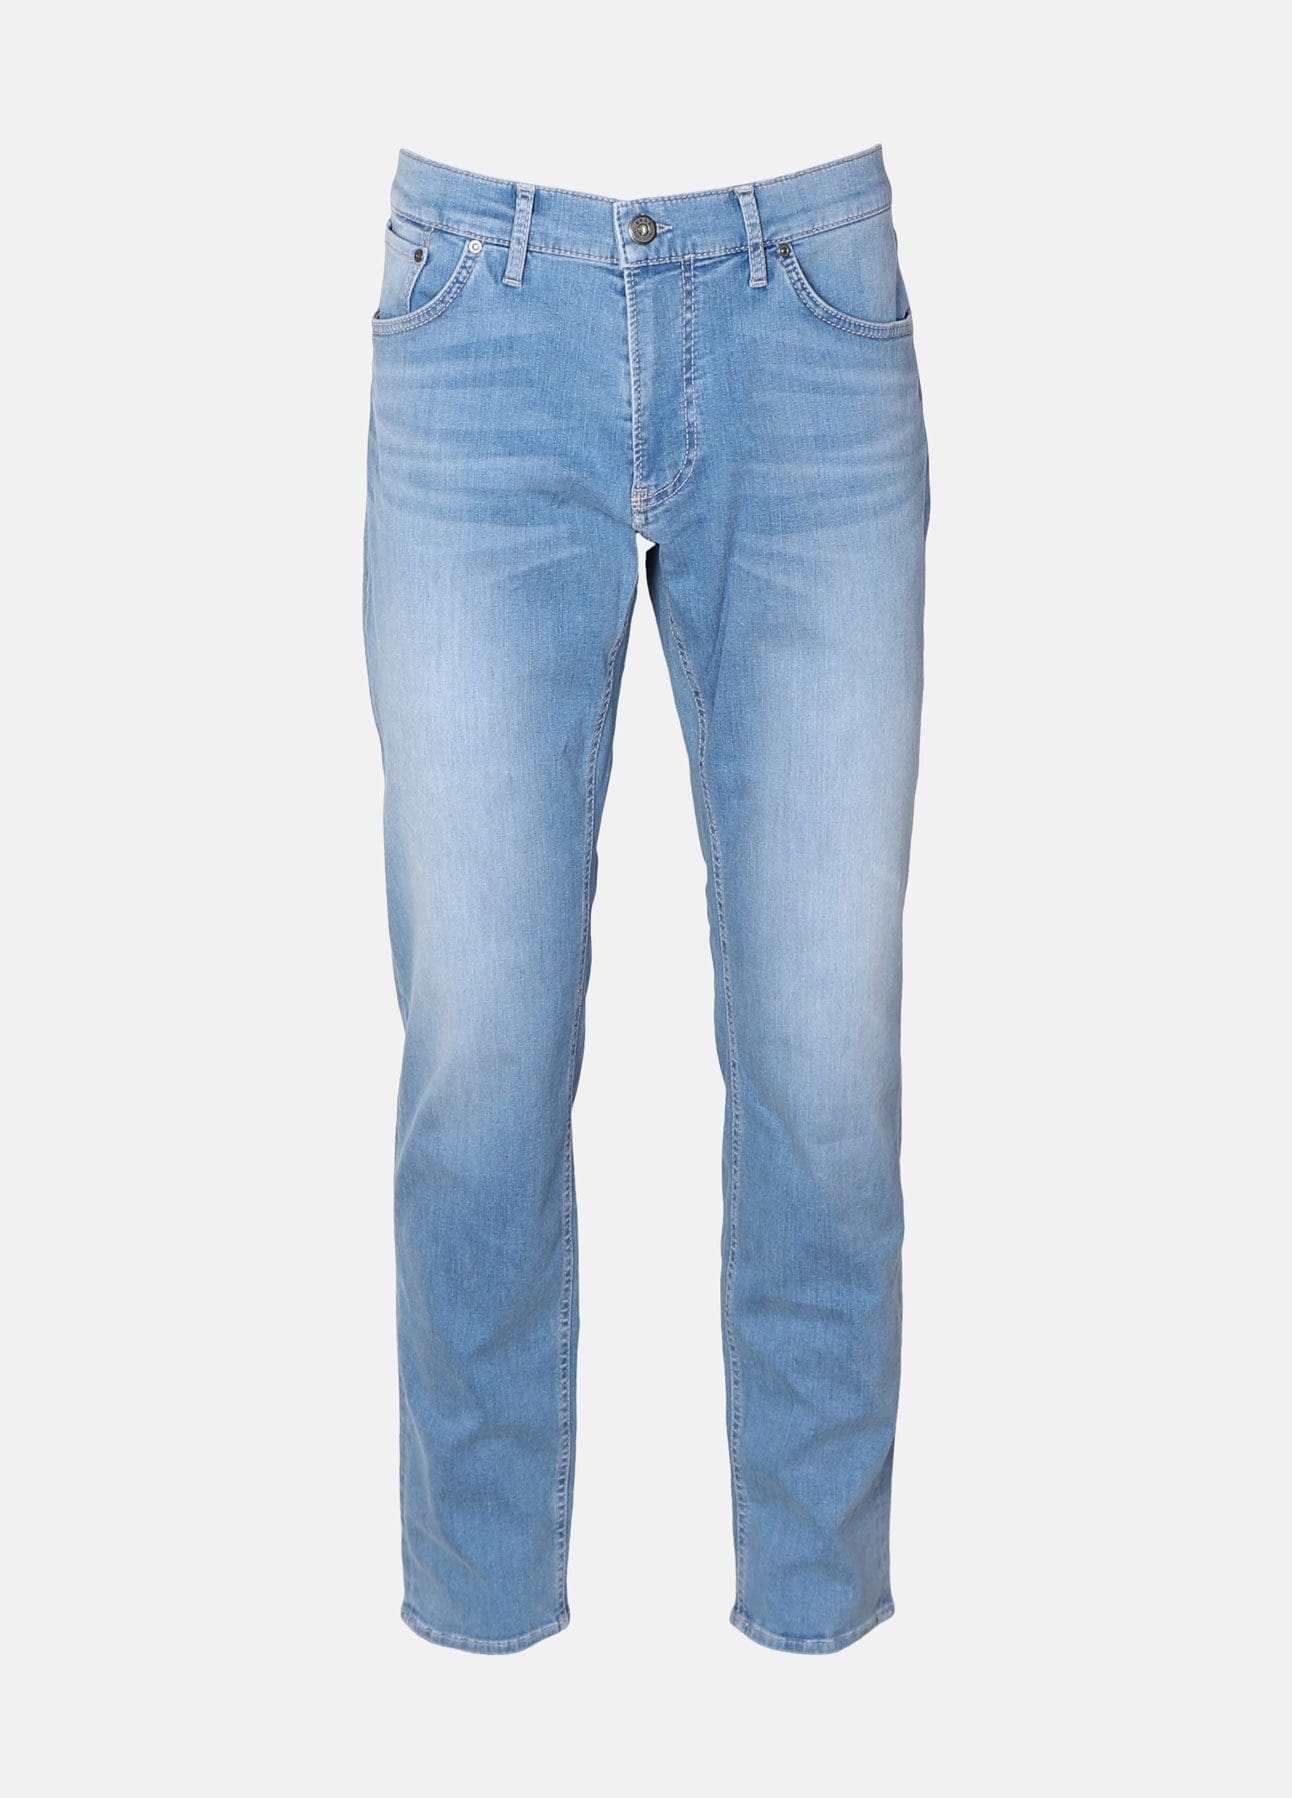 Chuck jeans fra Brax | Køb online hos